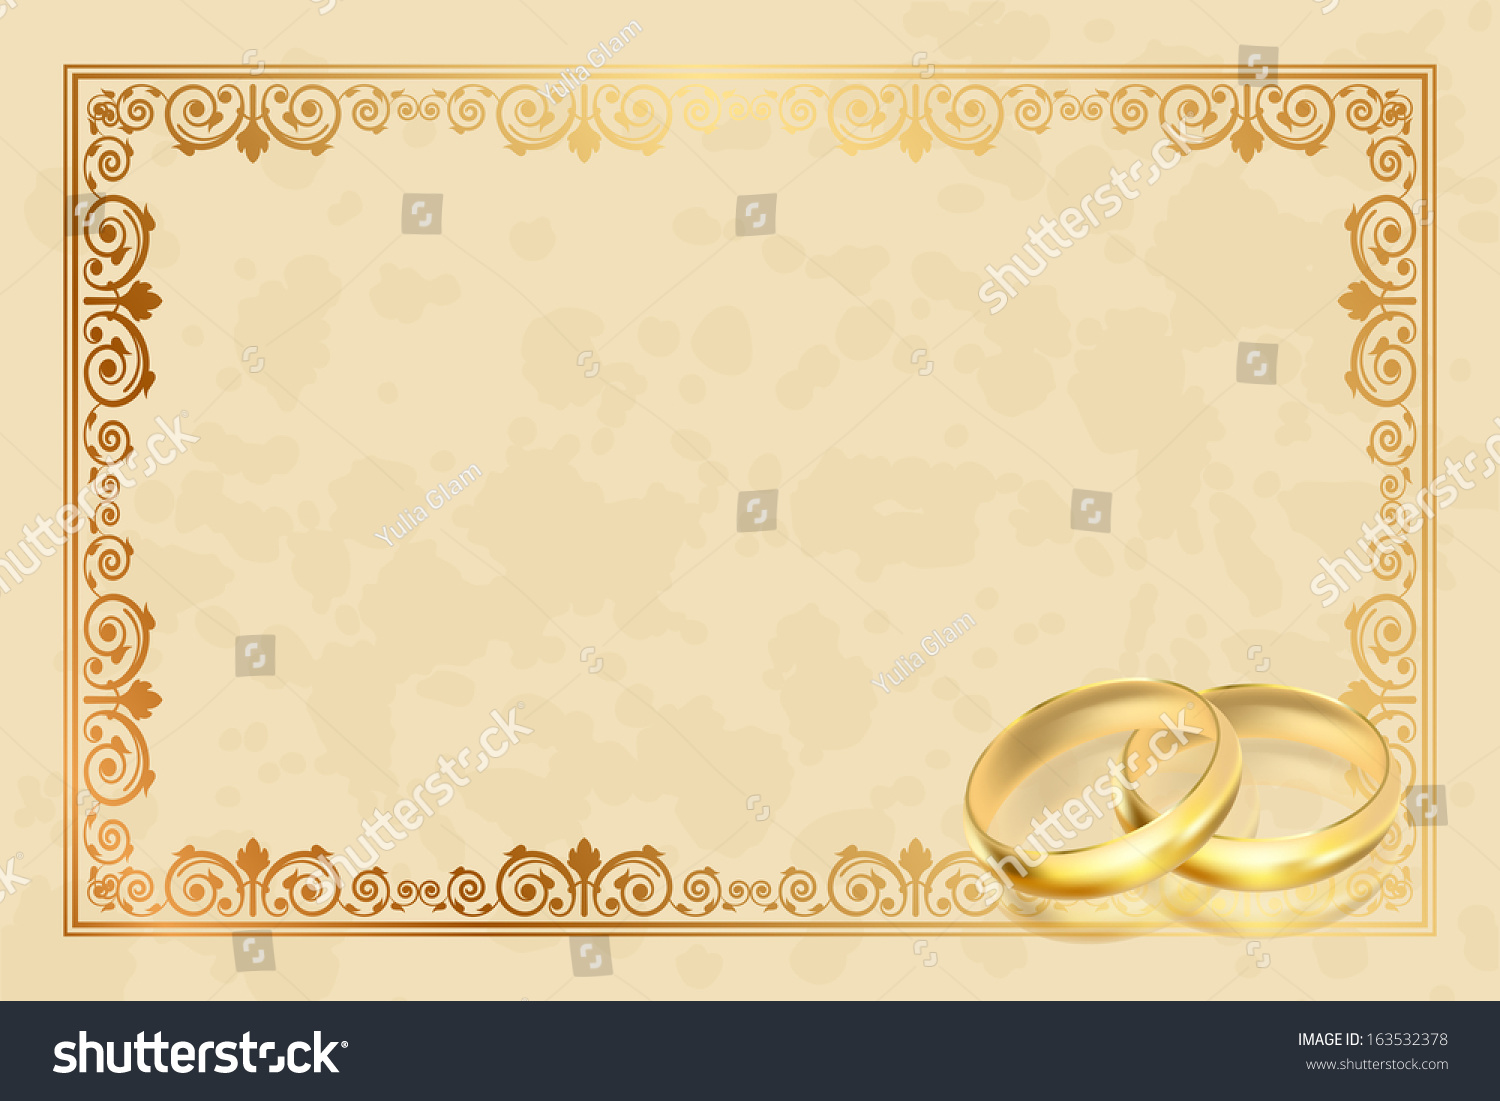 рамка для фото золотая свадьба